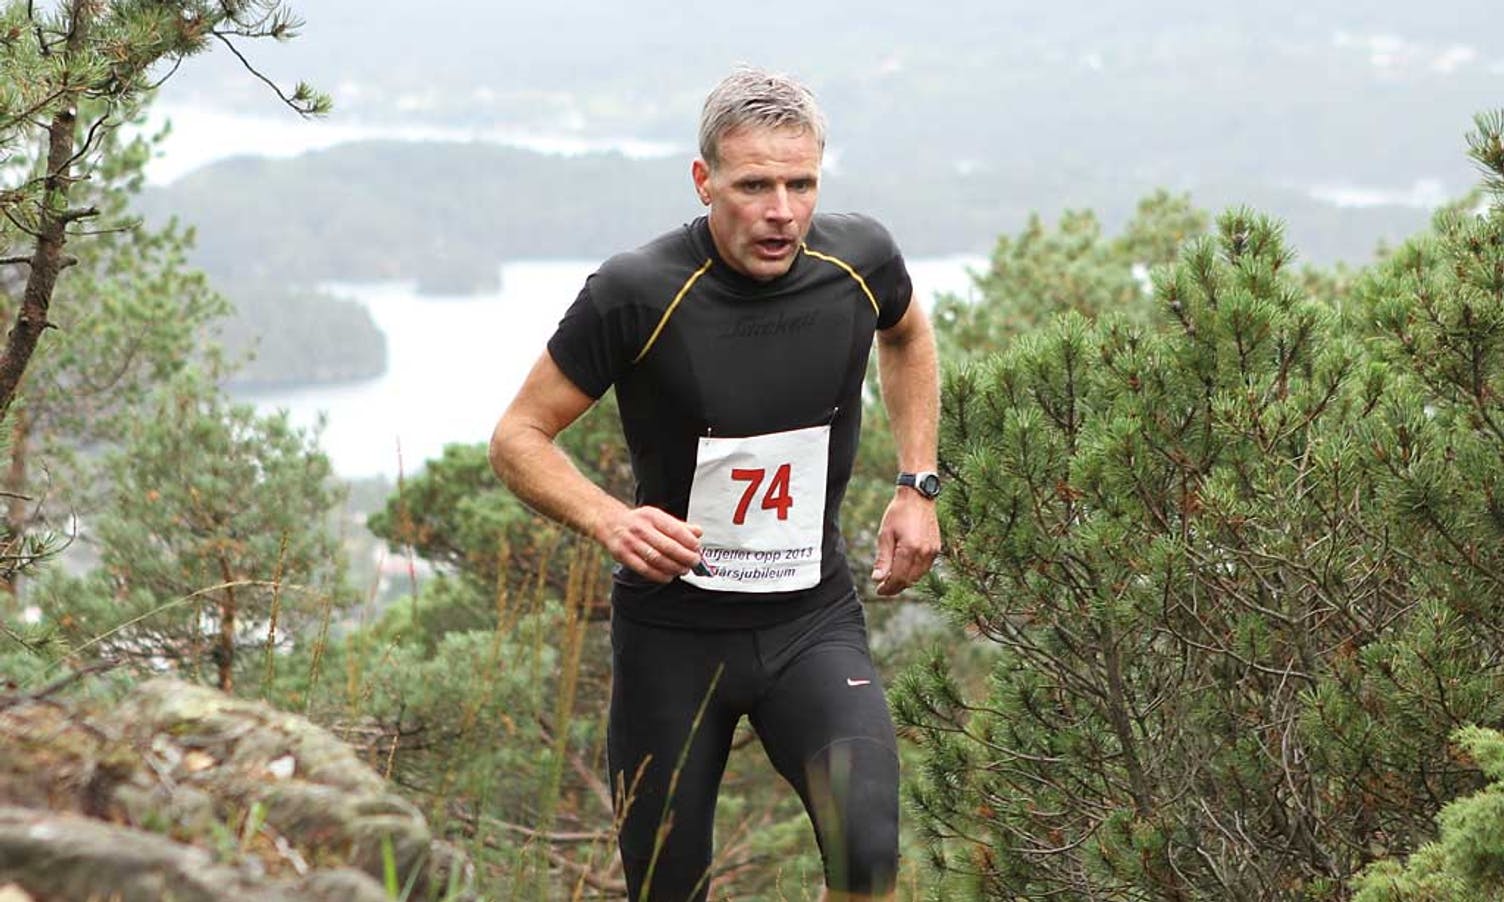 Kjetil Styrvoll kom på 2. plass i klassen herrar 40-44 år (her i Liafjellet Opp 2013). (Foto: KVB)